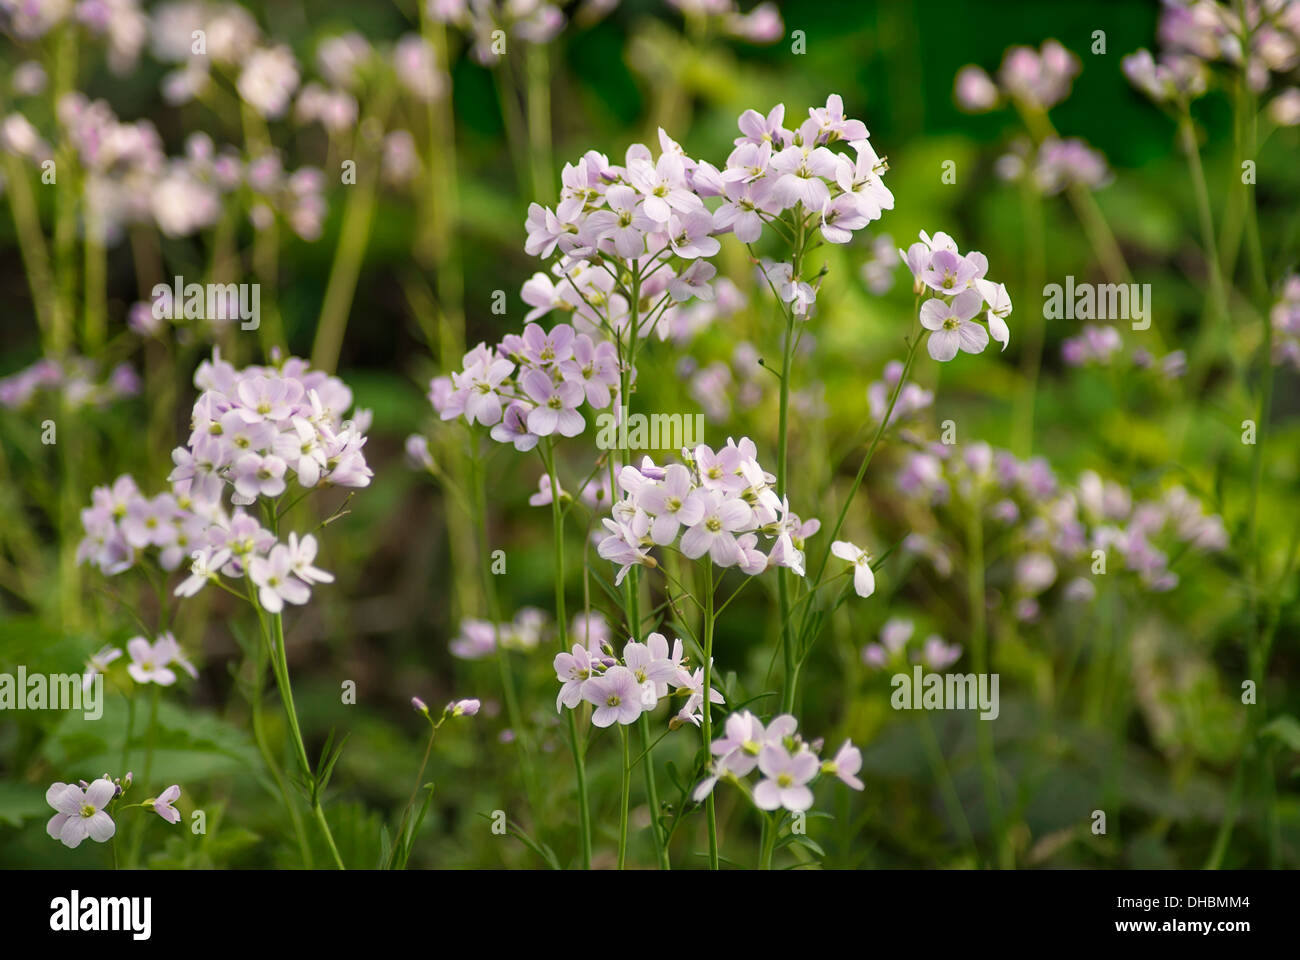 Flor de cuco, Cardamine pratensis, creciendo en un jardín al aire libre. Foto de stock